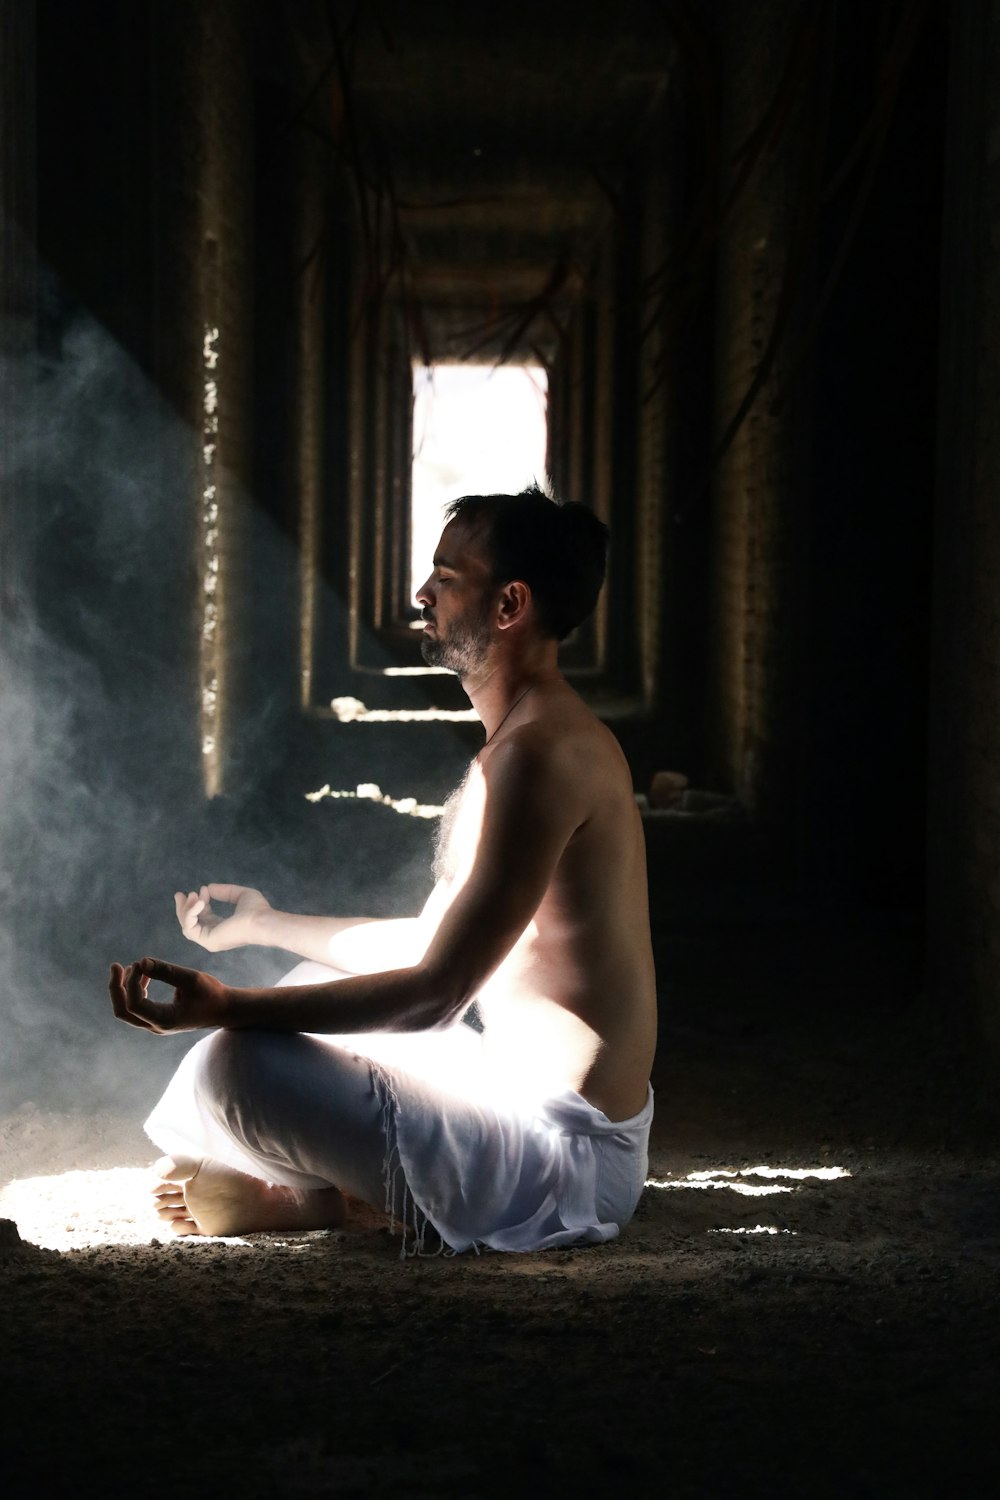 Mann meditiert im Gebäude